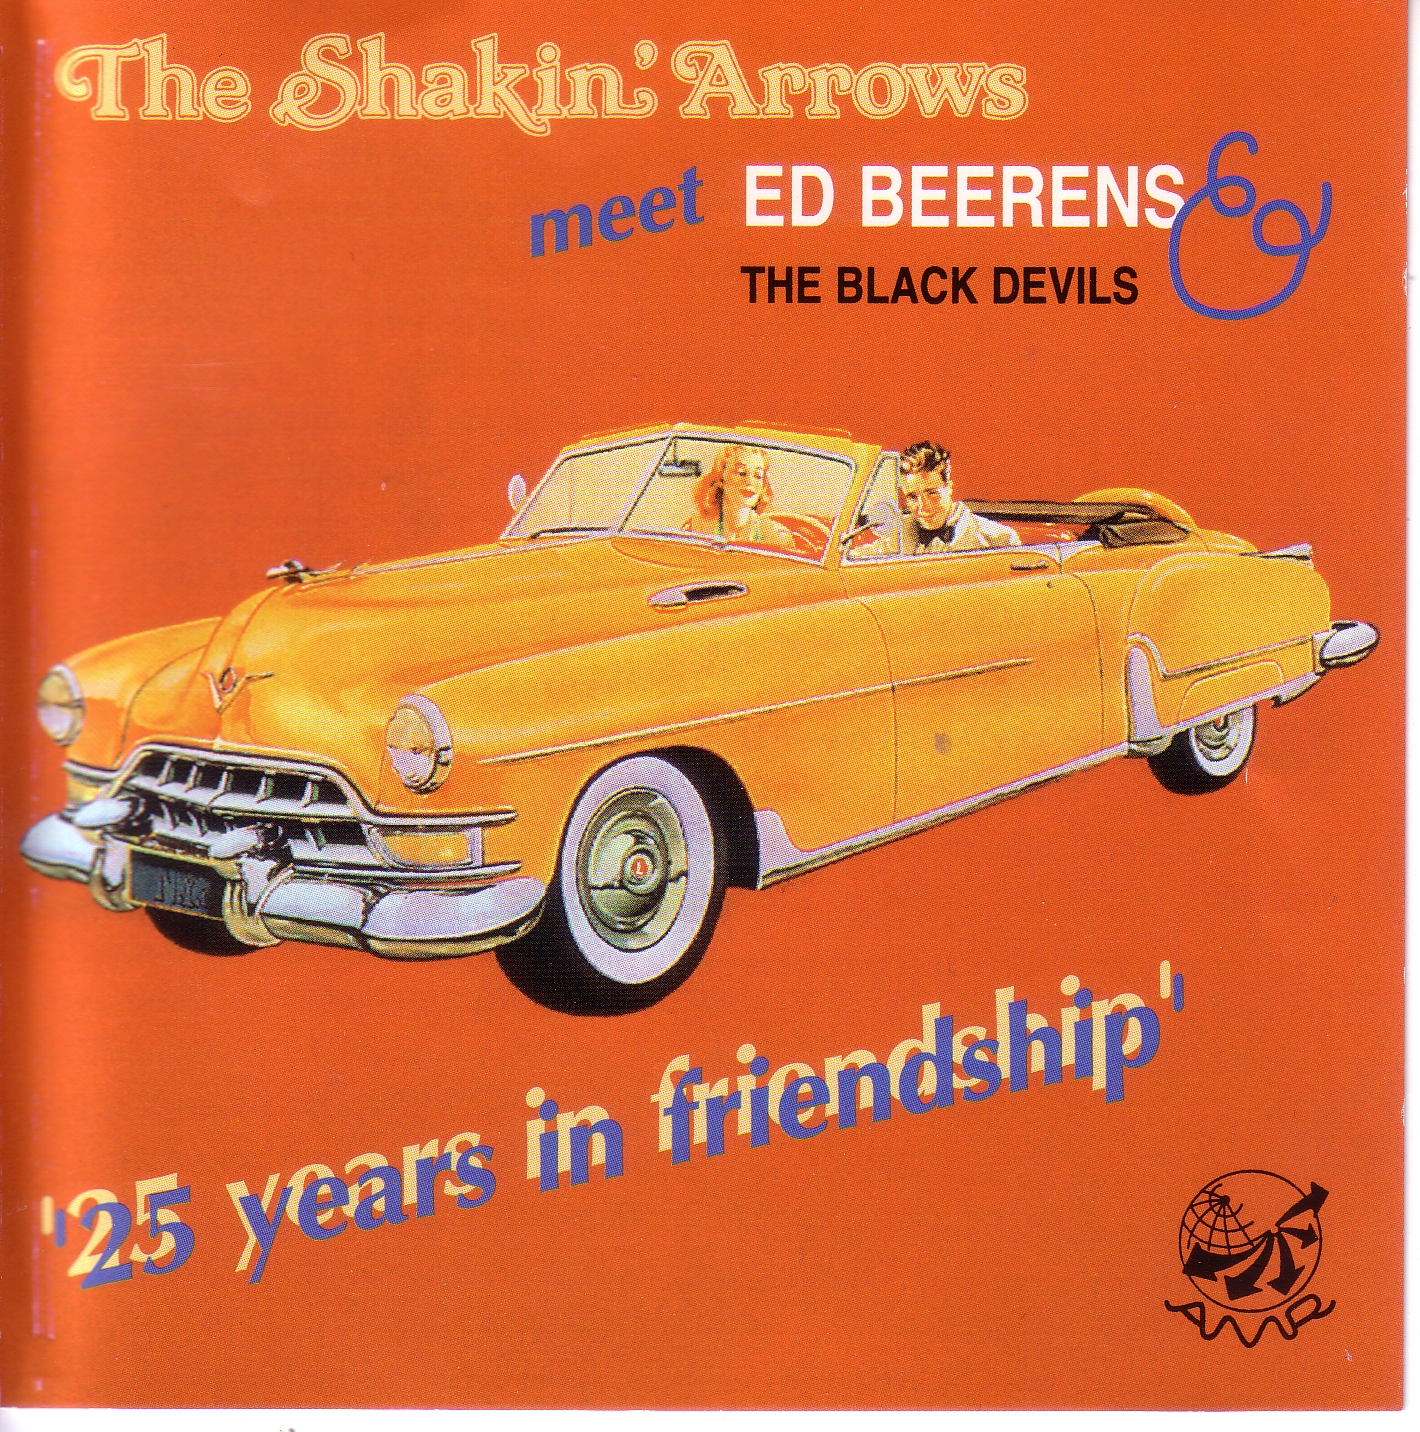 The shakin Arrows 25 years in friendship